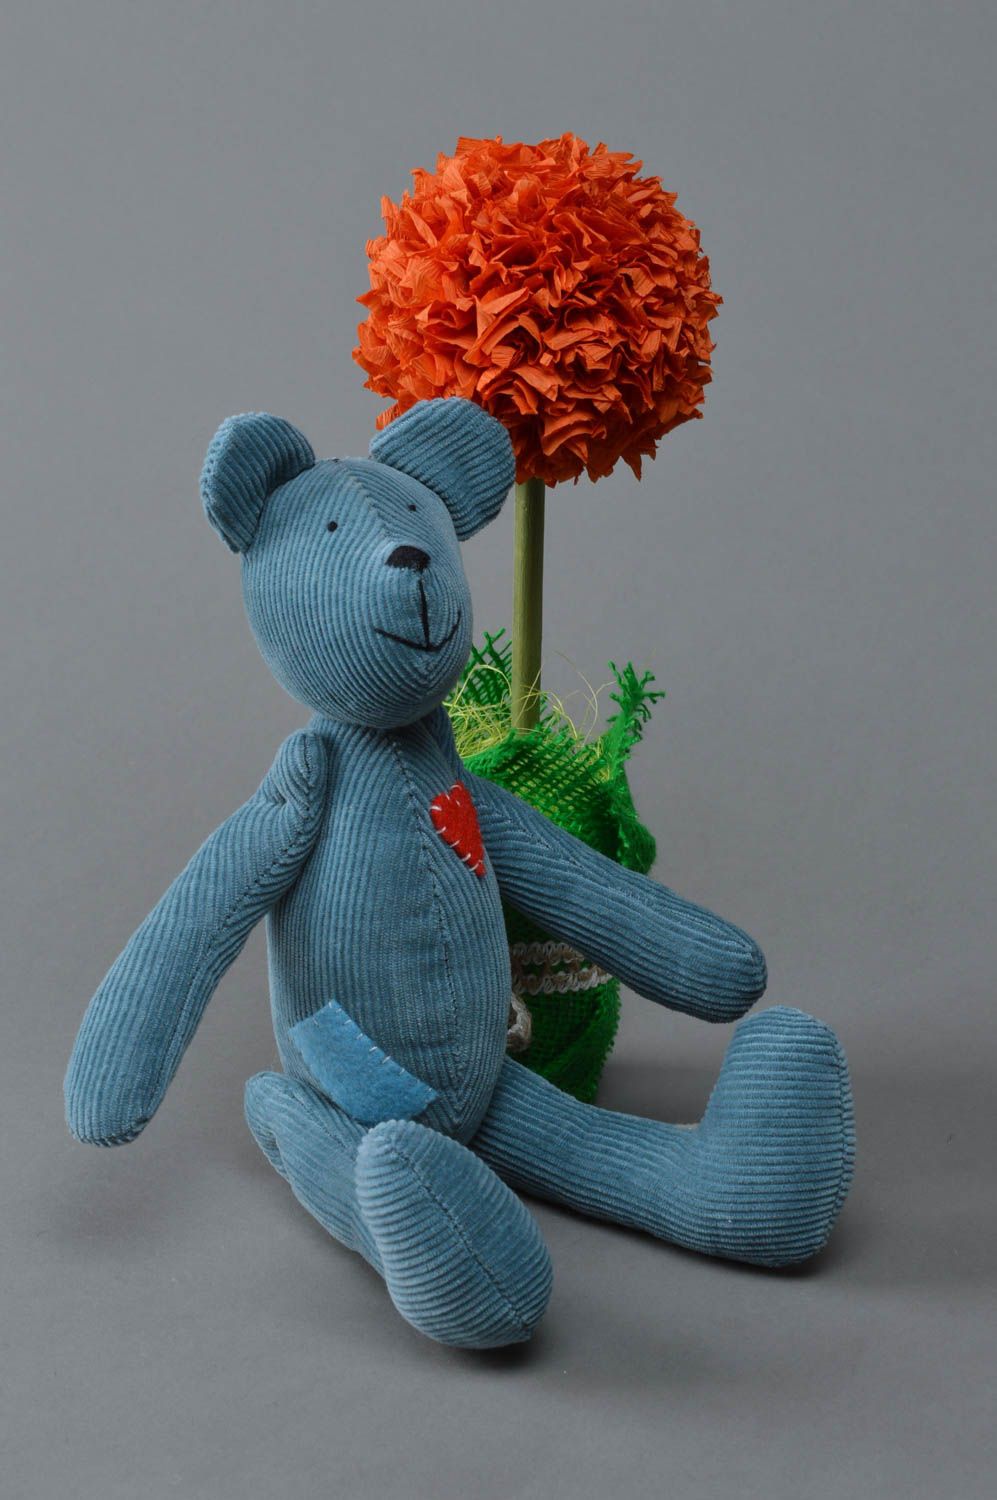 Мягкая игрушка из ткани ручной работы красивая авторская для дома и детей Мишка фото 2